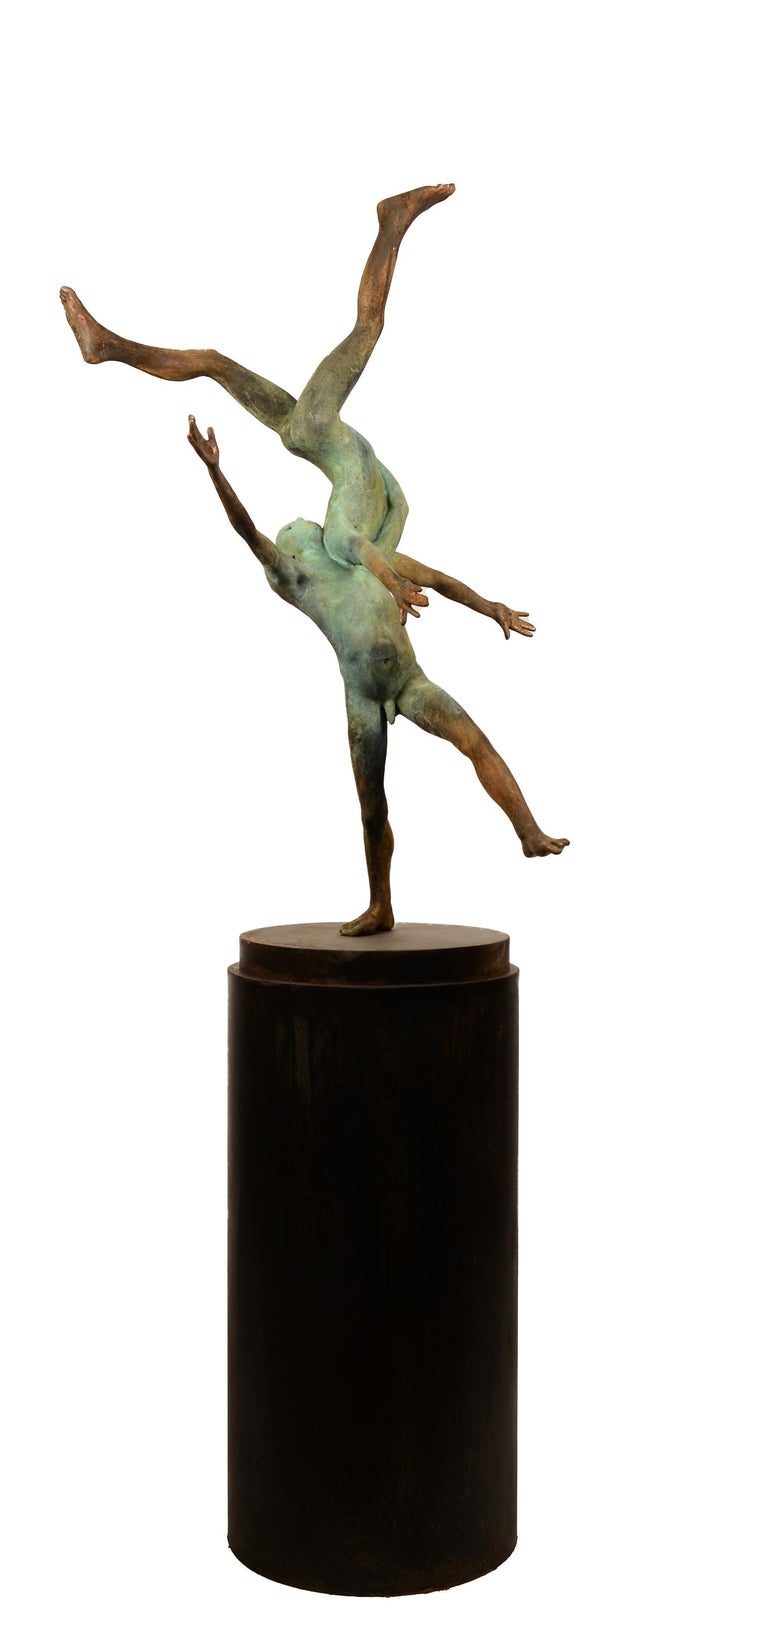 Jesus Curia Perez Figurative Sculpture - Pugnatum II, Renaissance Inspired Bronze Sculpture of Two Aerial Performers